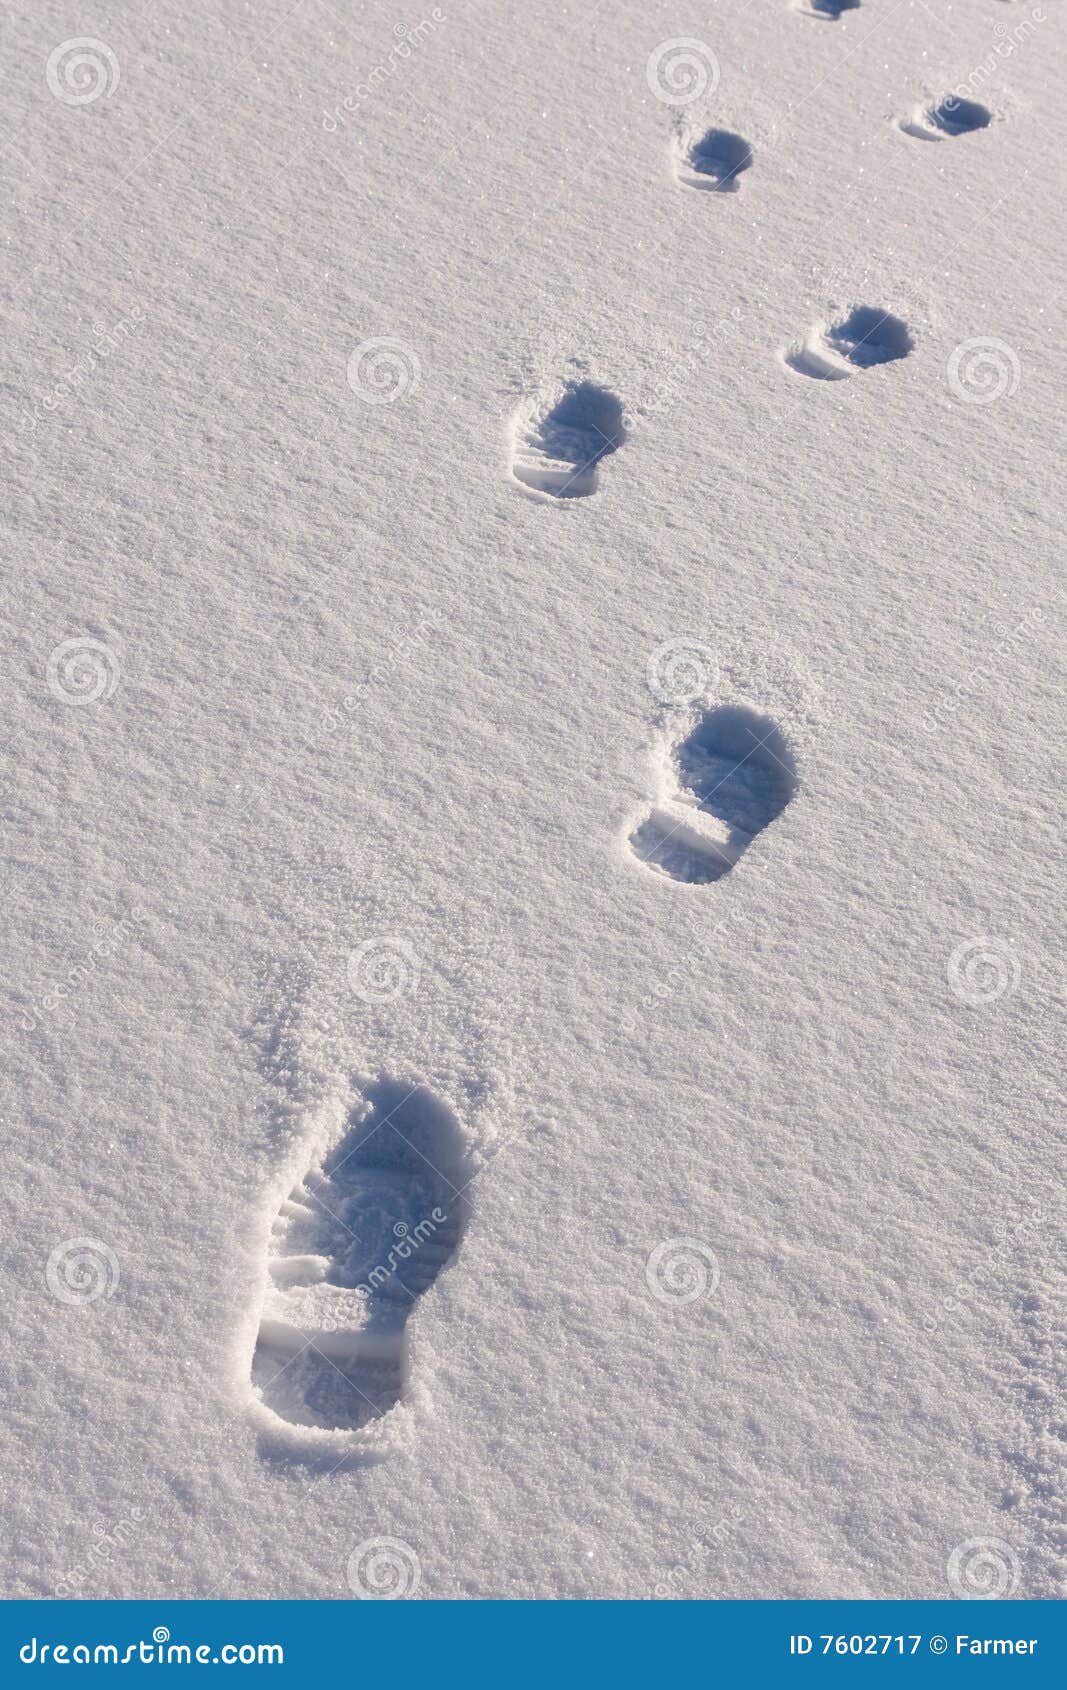 След недели будет. Следы на снегу. Следы человека на снегу. Объемные следы. Отпечатки ног на снегу.